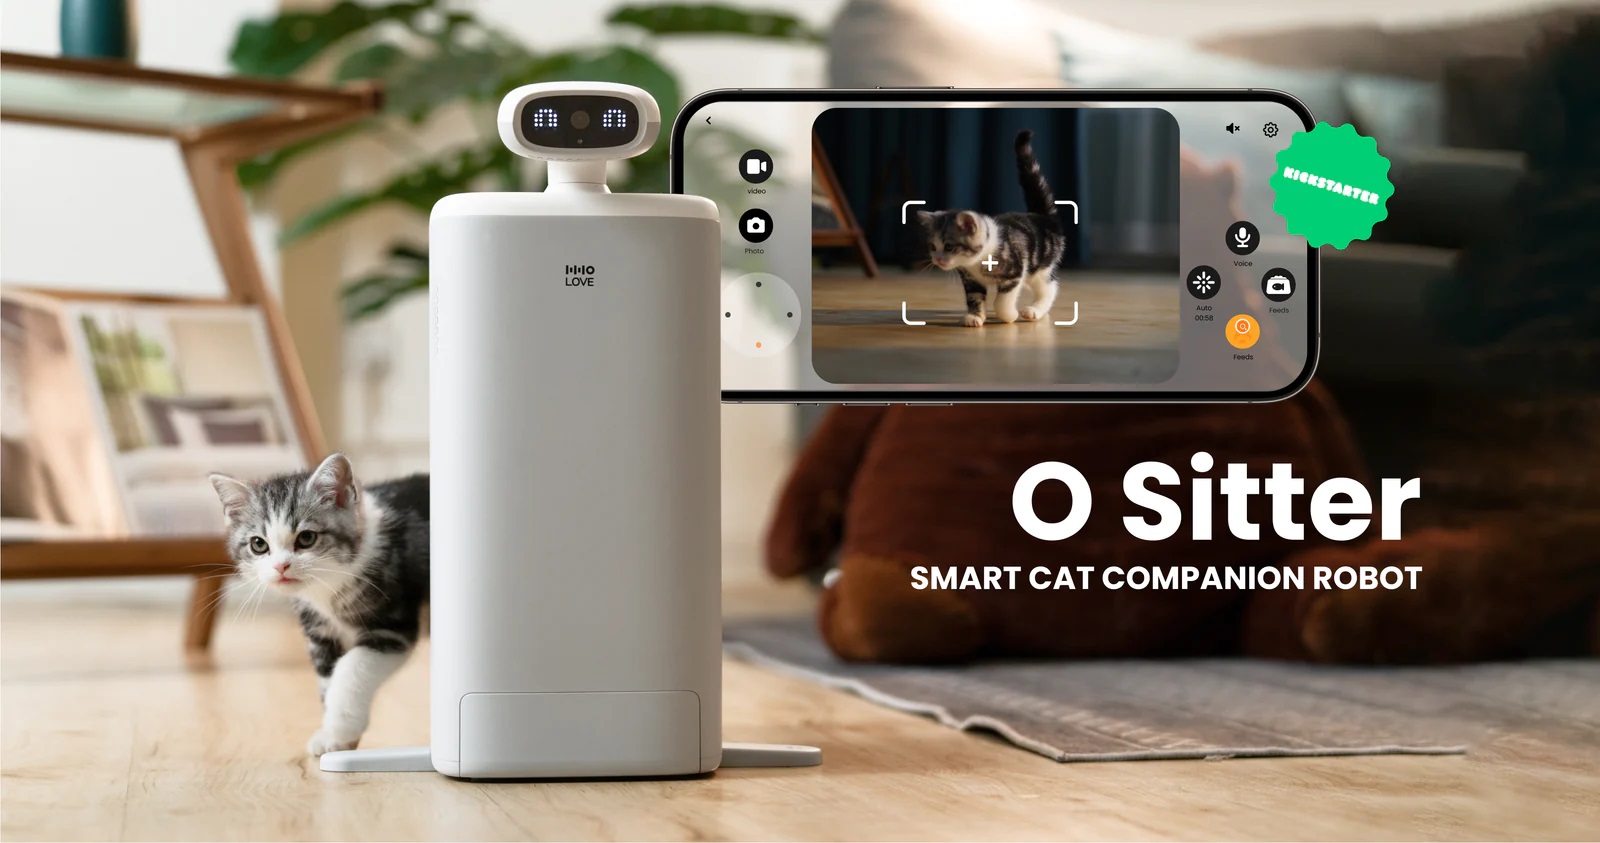 HHOLOVE O Sitter: smart robotkattvakt med kamera och automatisk matare som underhåller och matar husdjur